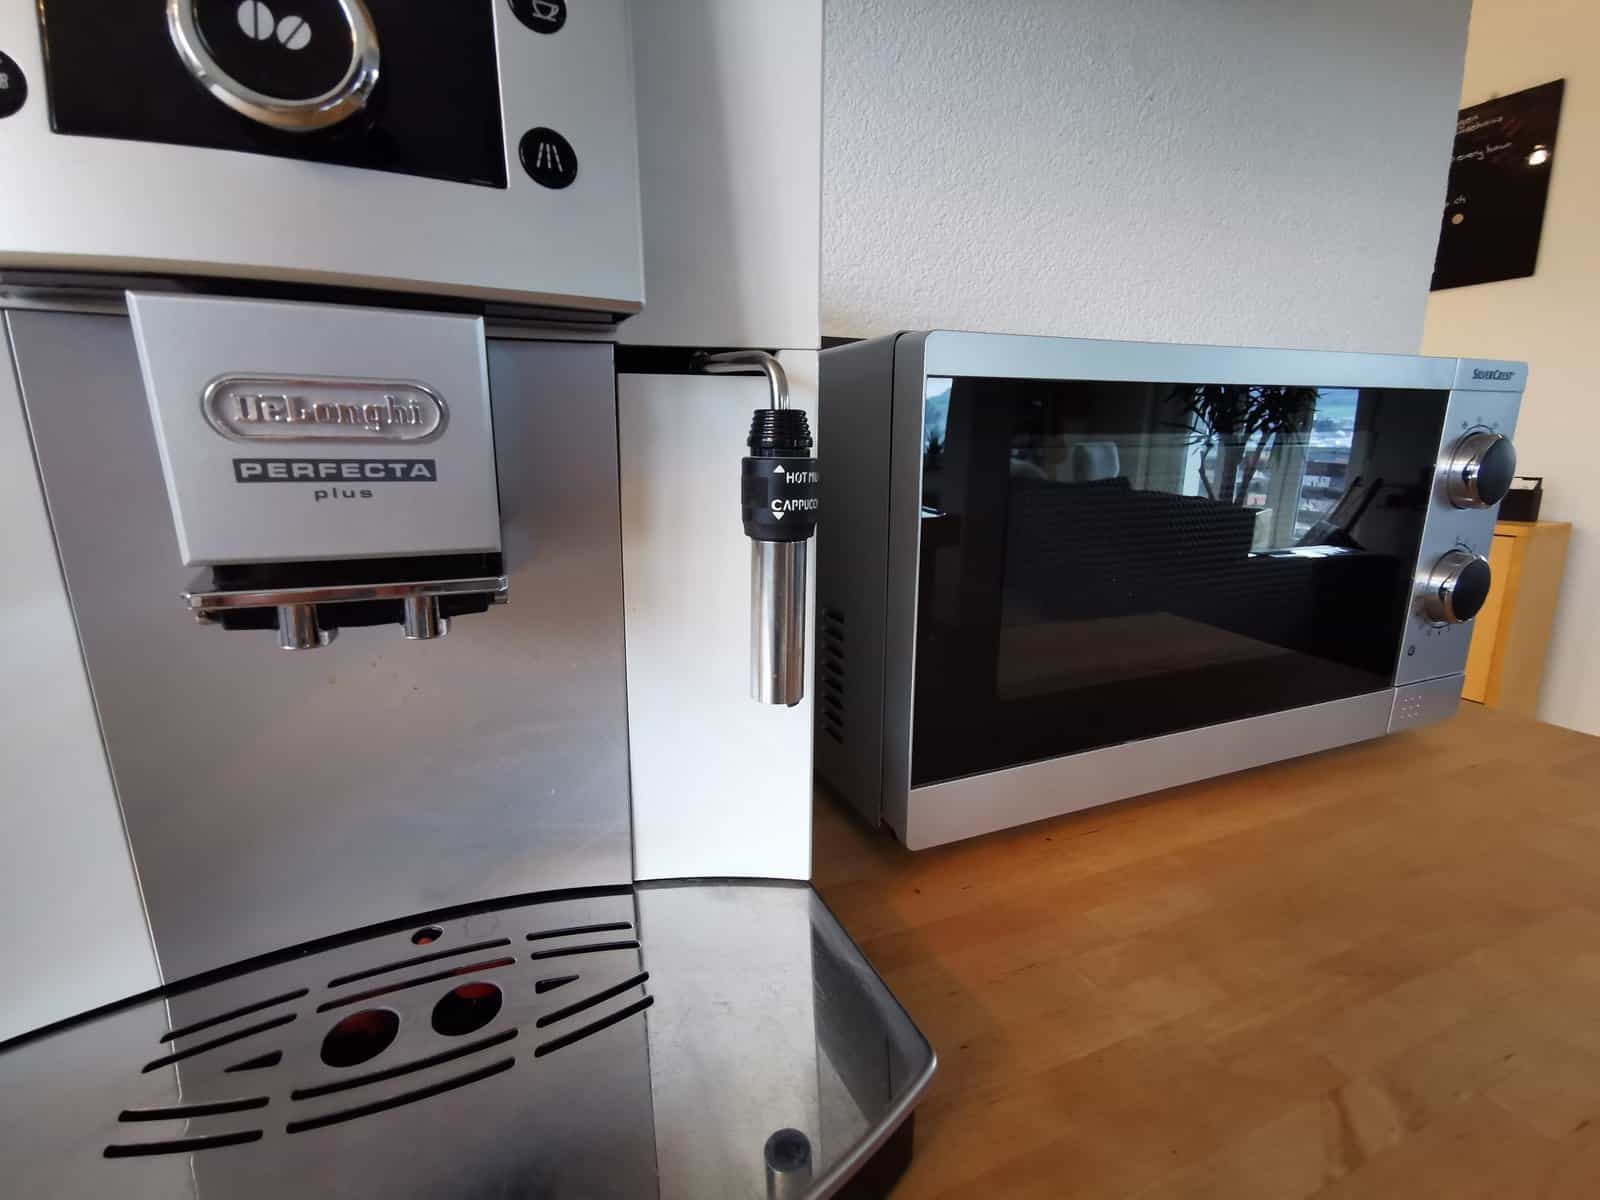 Coffee machine and microwave